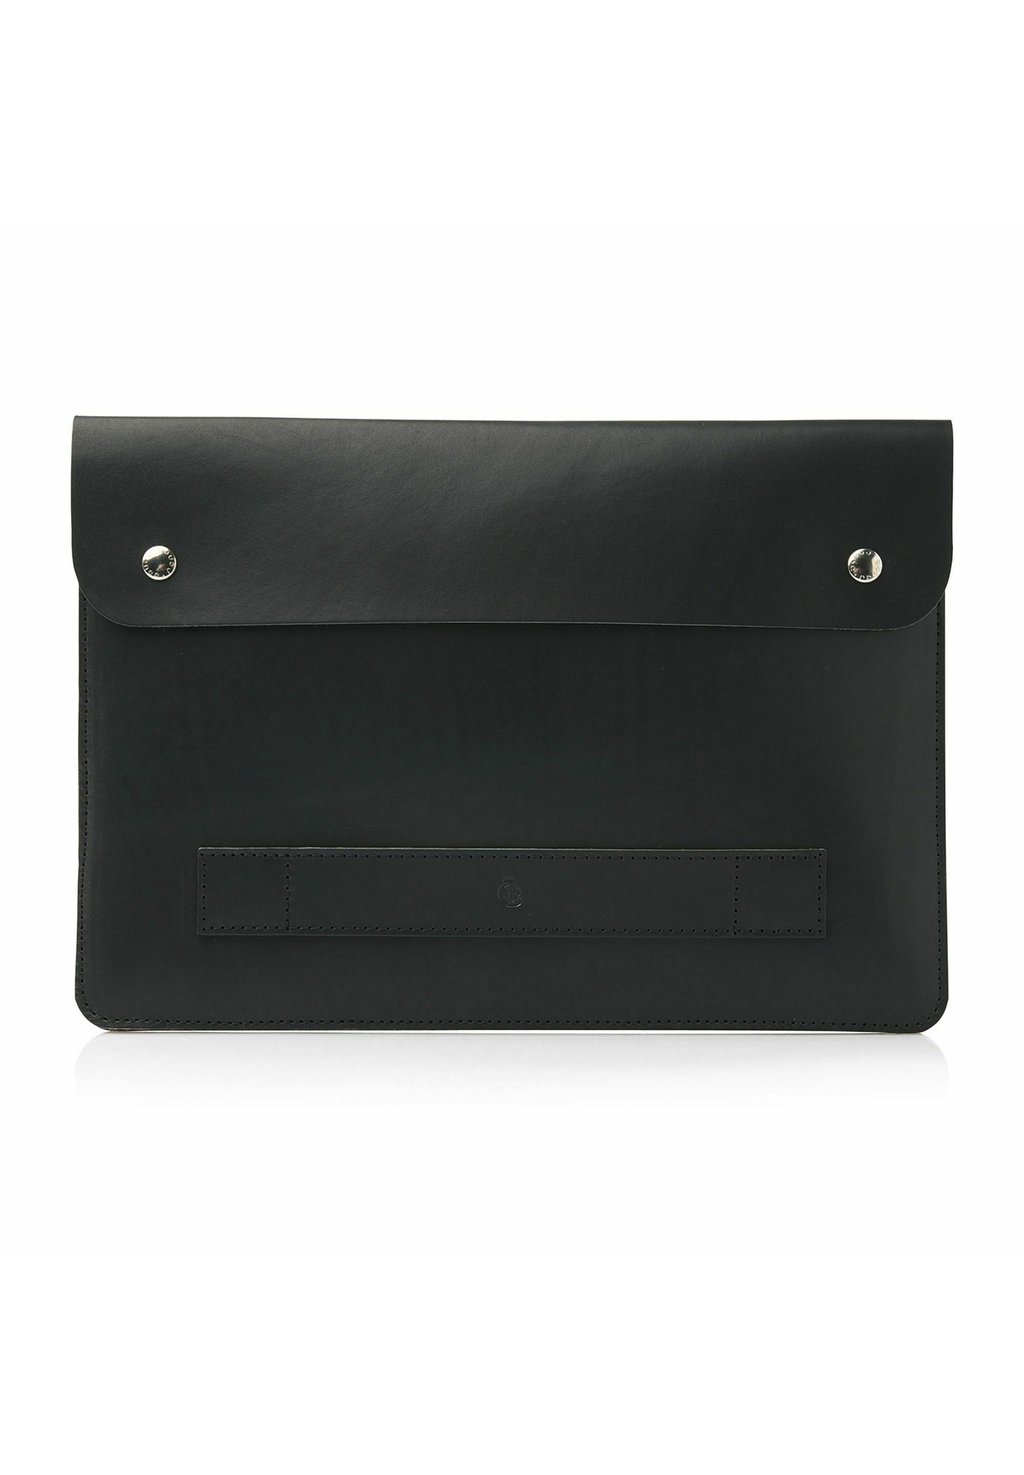 Сумка для ноутбука LAPTOPHÜLLE Castelijn & Beerens, цвет schwarz сумка для ноутбука alpha castelijn